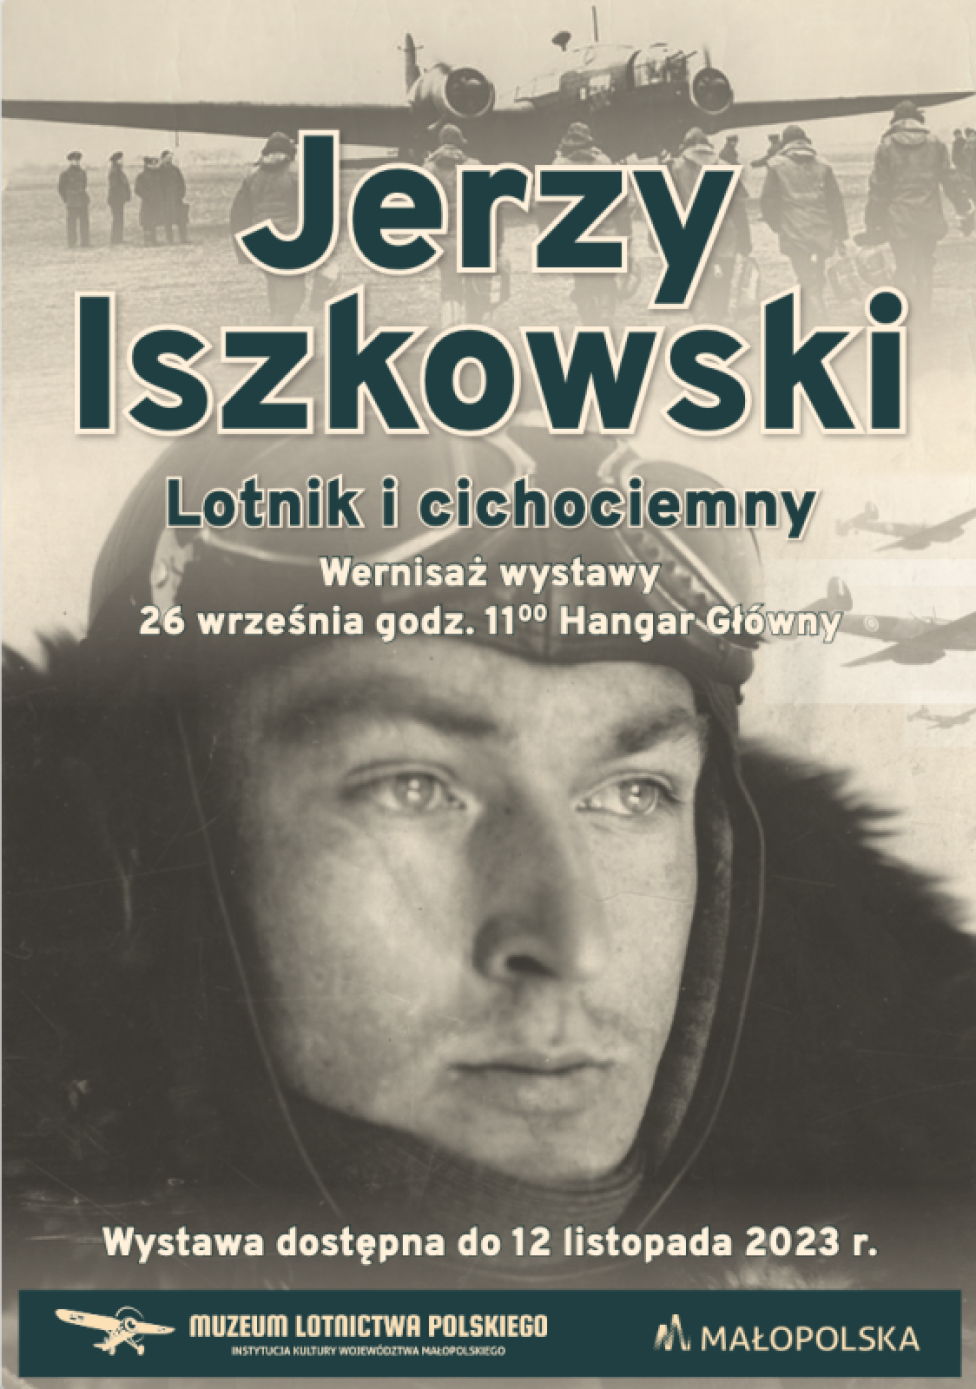 Jerzy Iszkowski, wernisaż wystwy